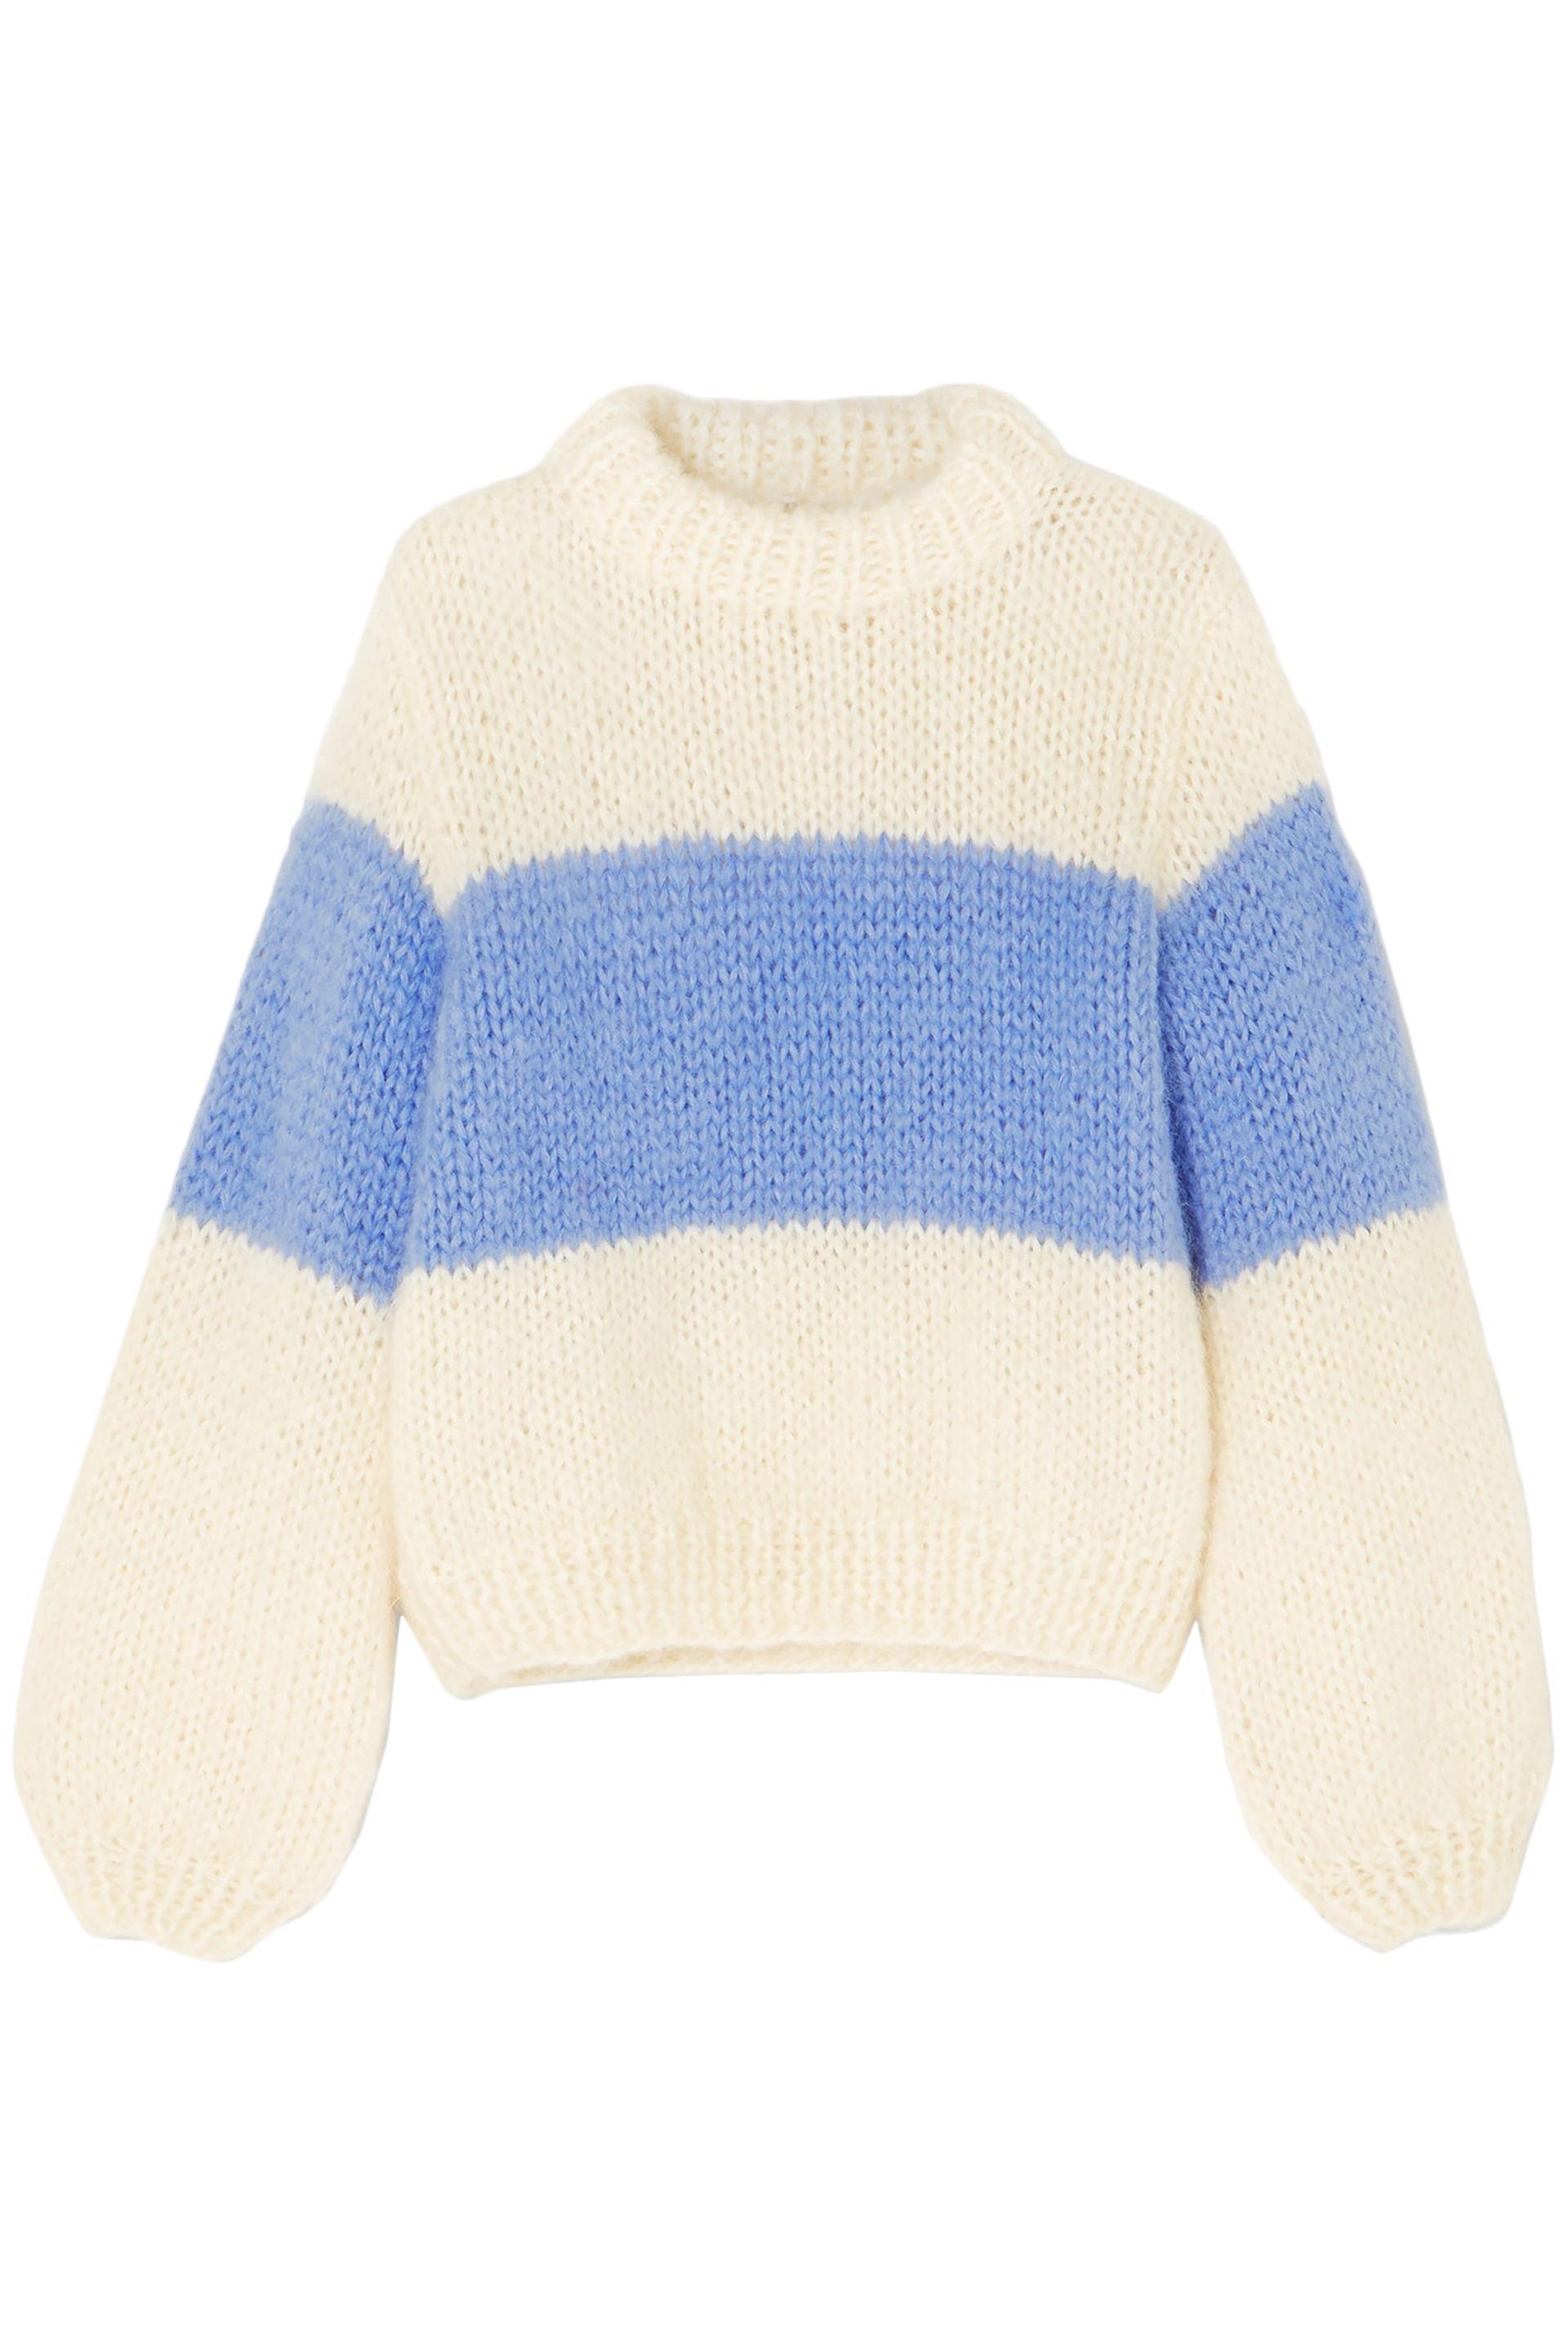 Ganni Striped Mohair And Wool-blend Sweater in Ecru (Blue) - Lyst